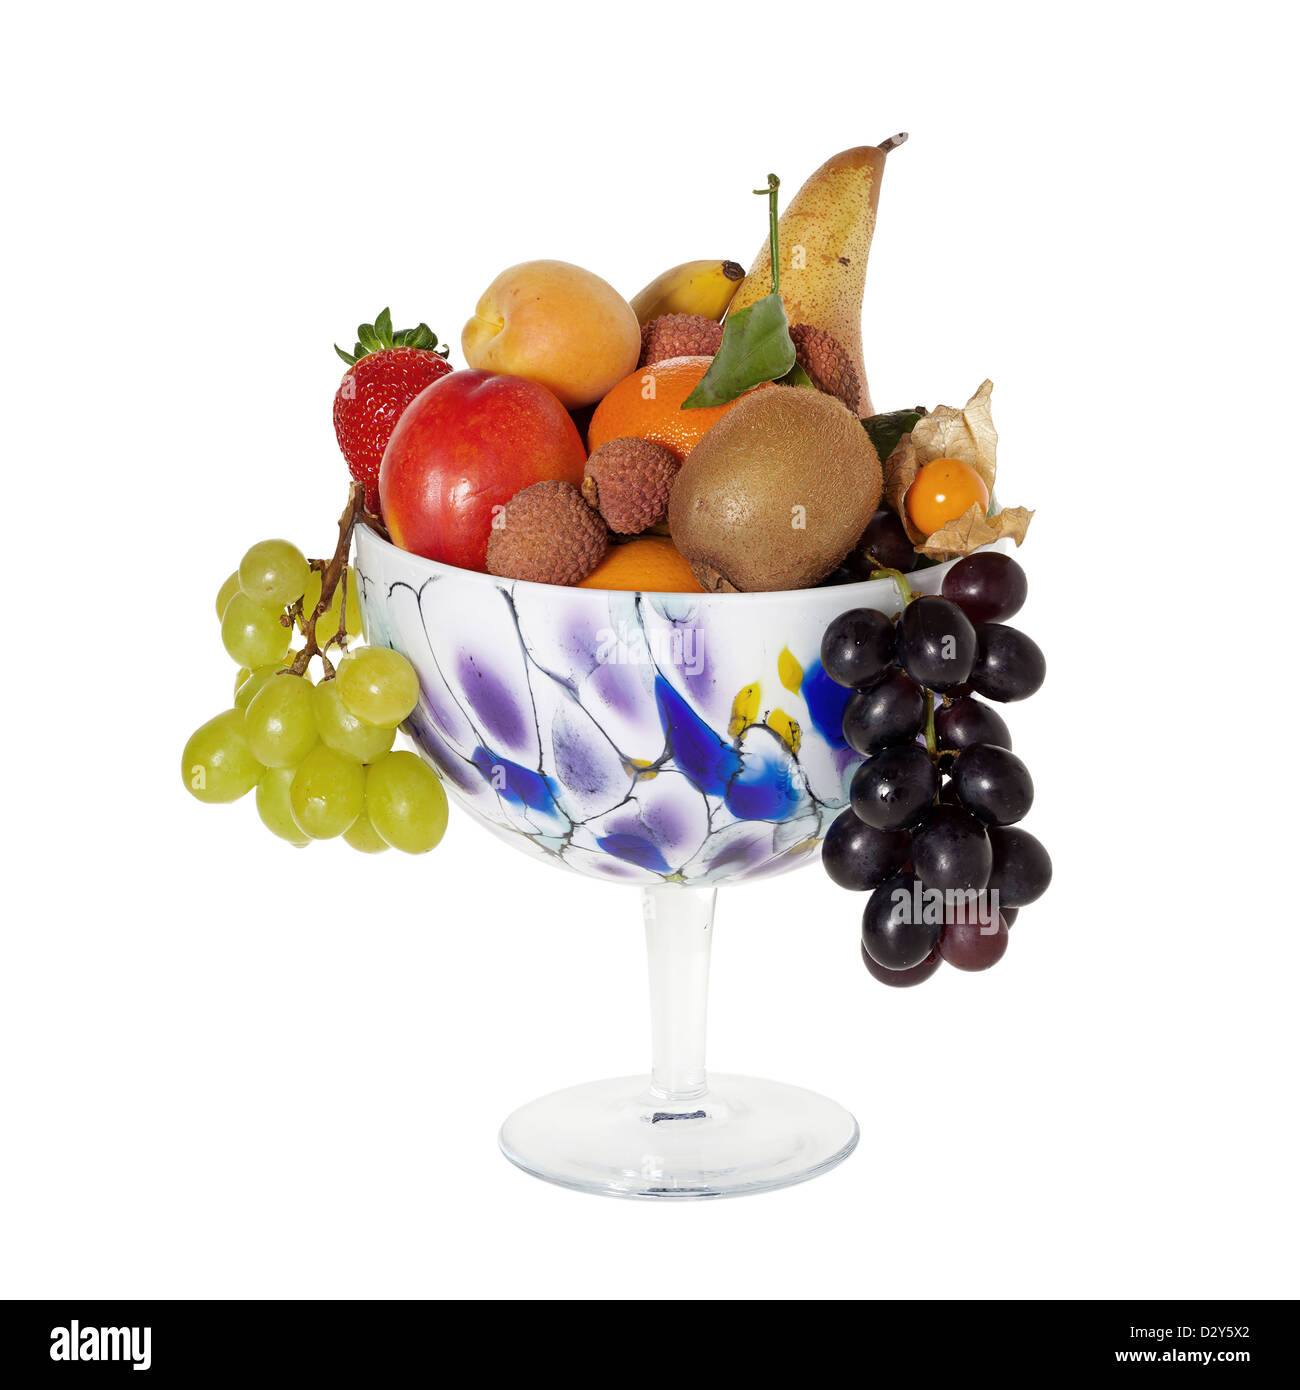 Assortiment de fruits à longue tige avec fruits frais contre isolé sur fond blanc Banque D'Images